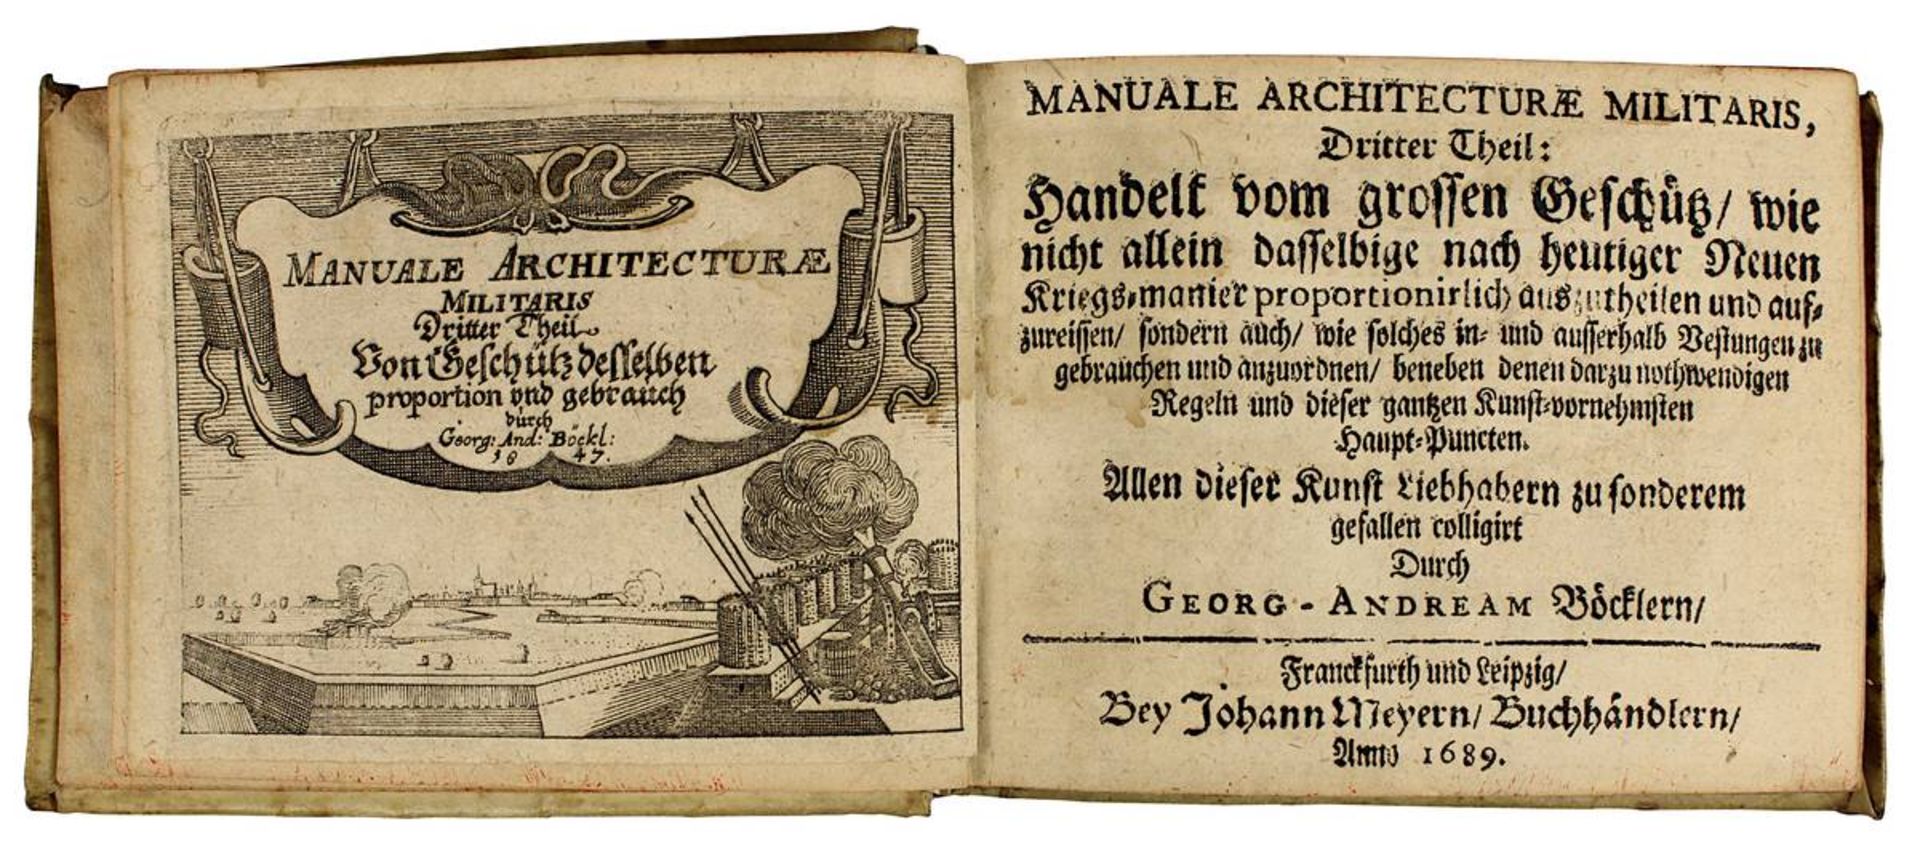 Böckler, Georg Adam "Manuale Architecturae Militaris", 3. u. 4. Teil, Dritter Theil: Handelt vom